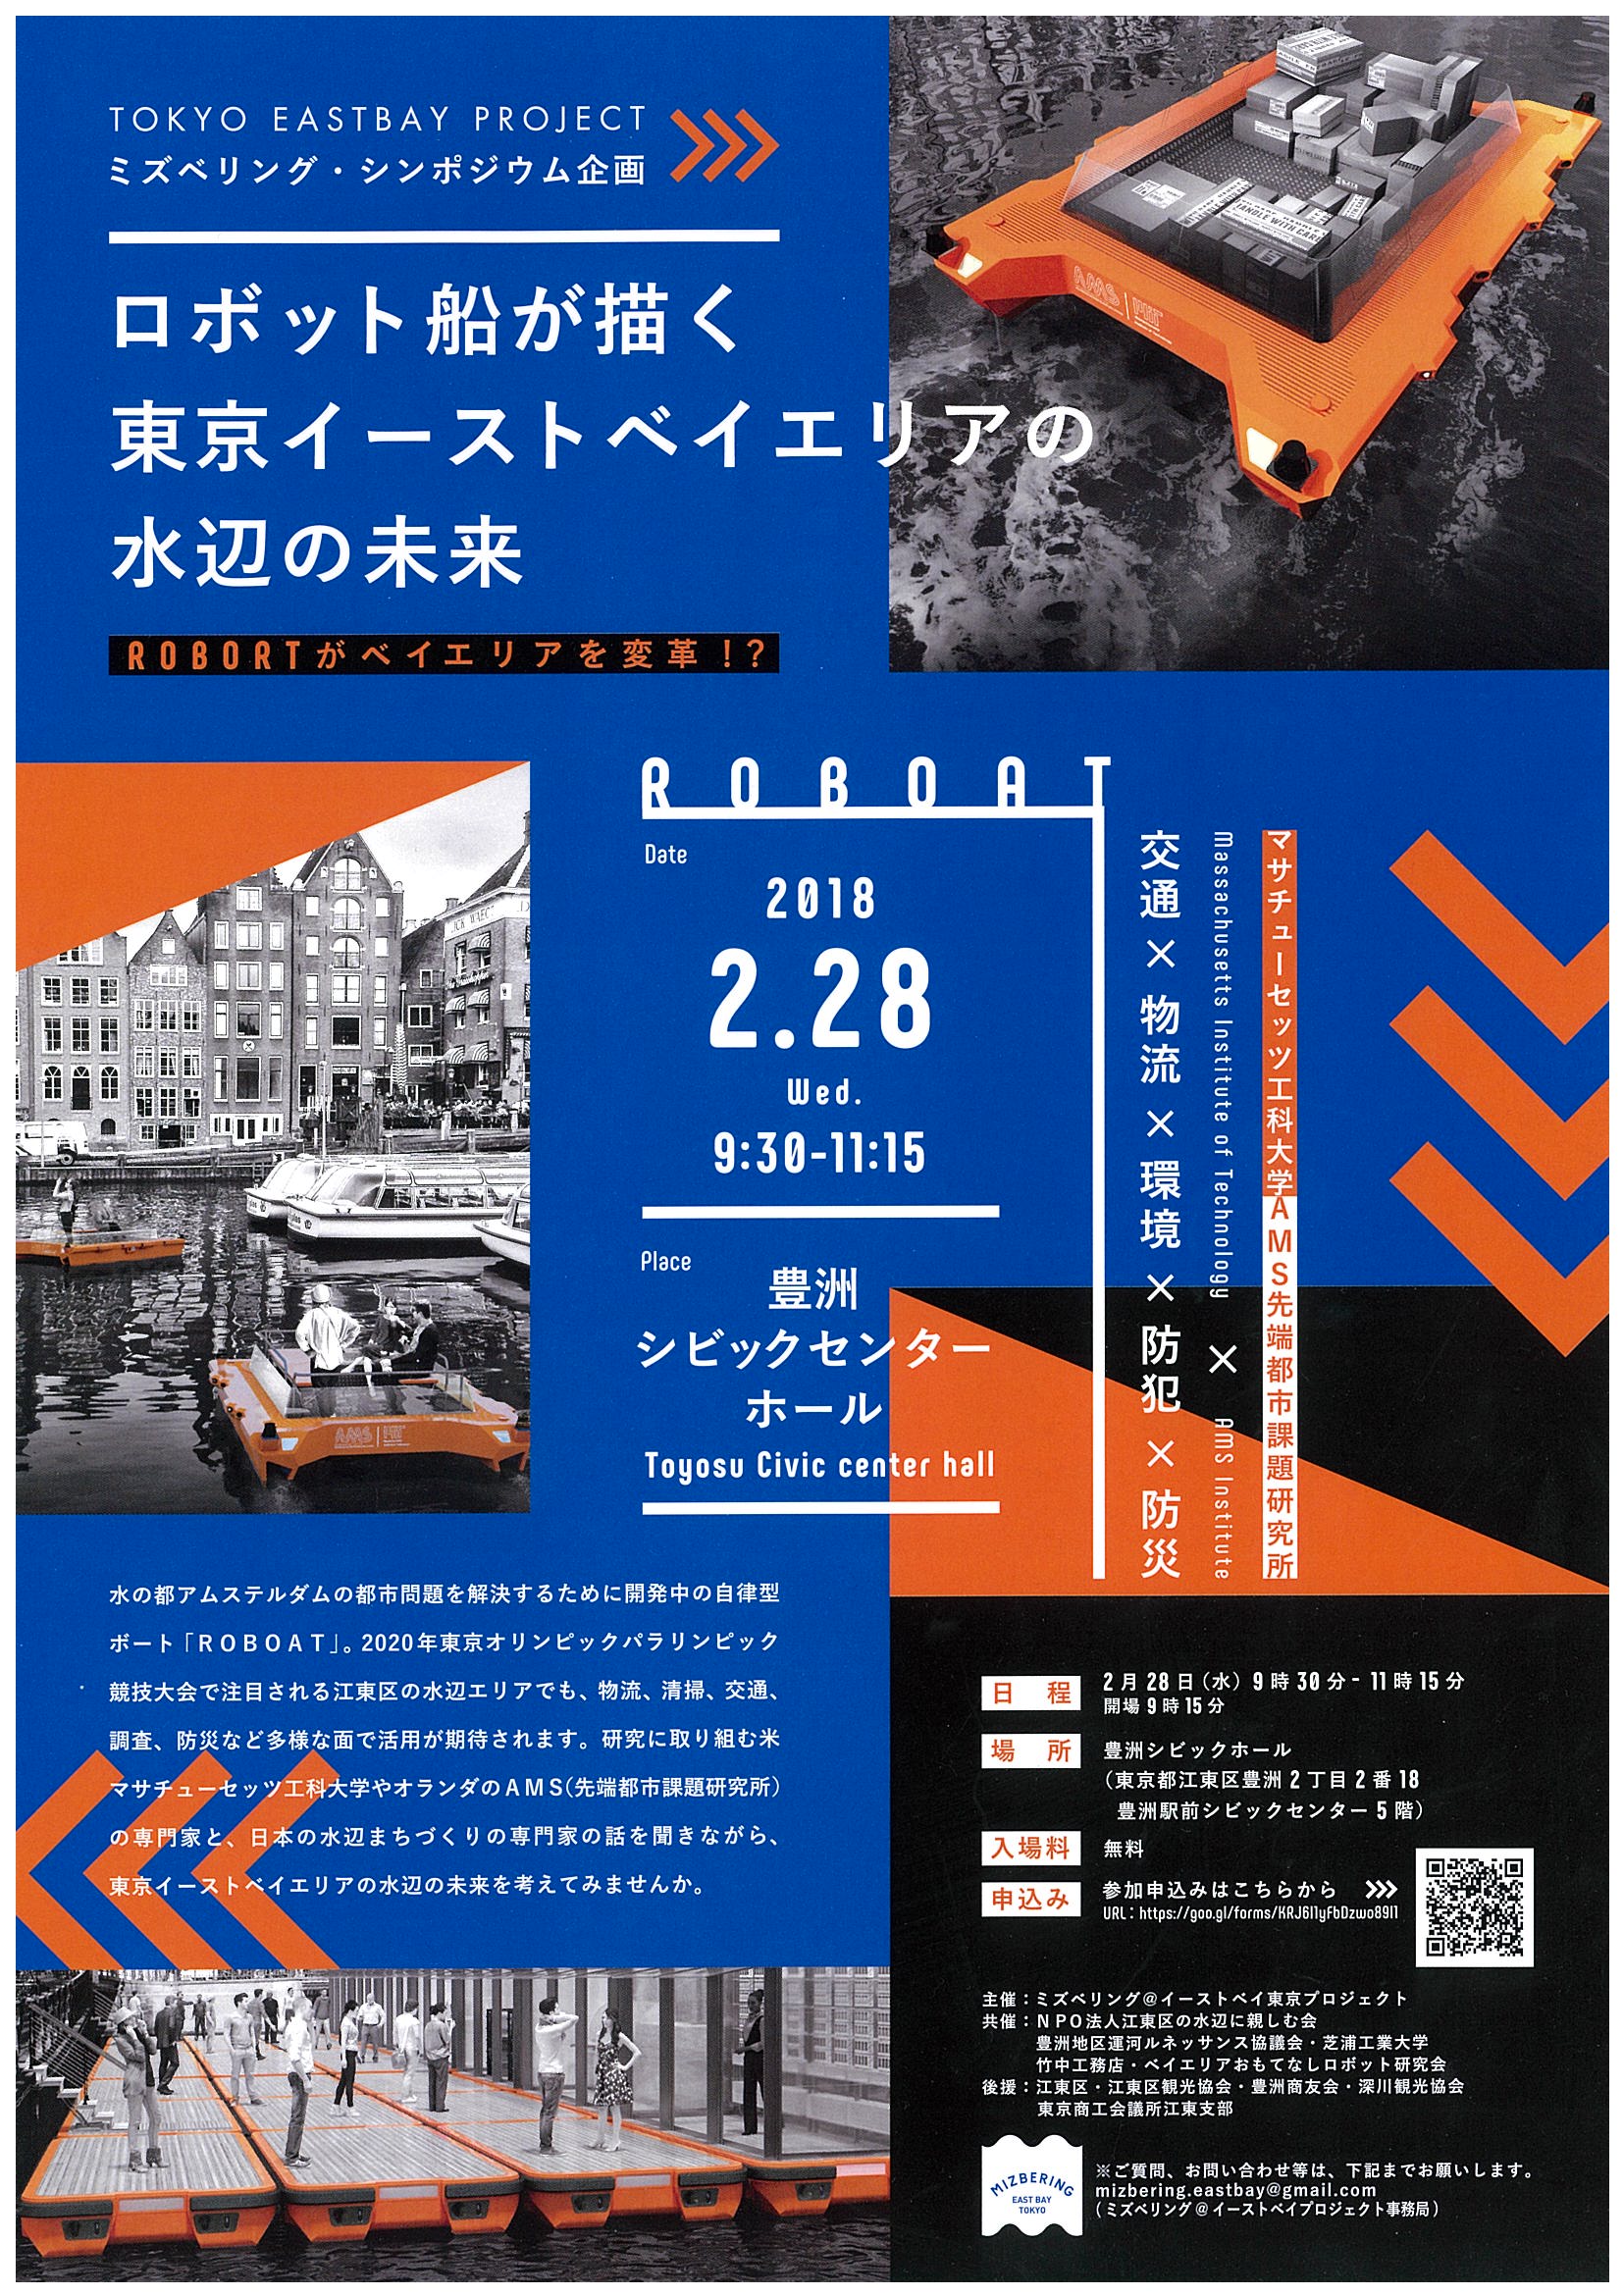 ミズベリング・シンポジウム企画「ロボット船が描く東京イーストベイエリアの水辺の未来」のフライヤー